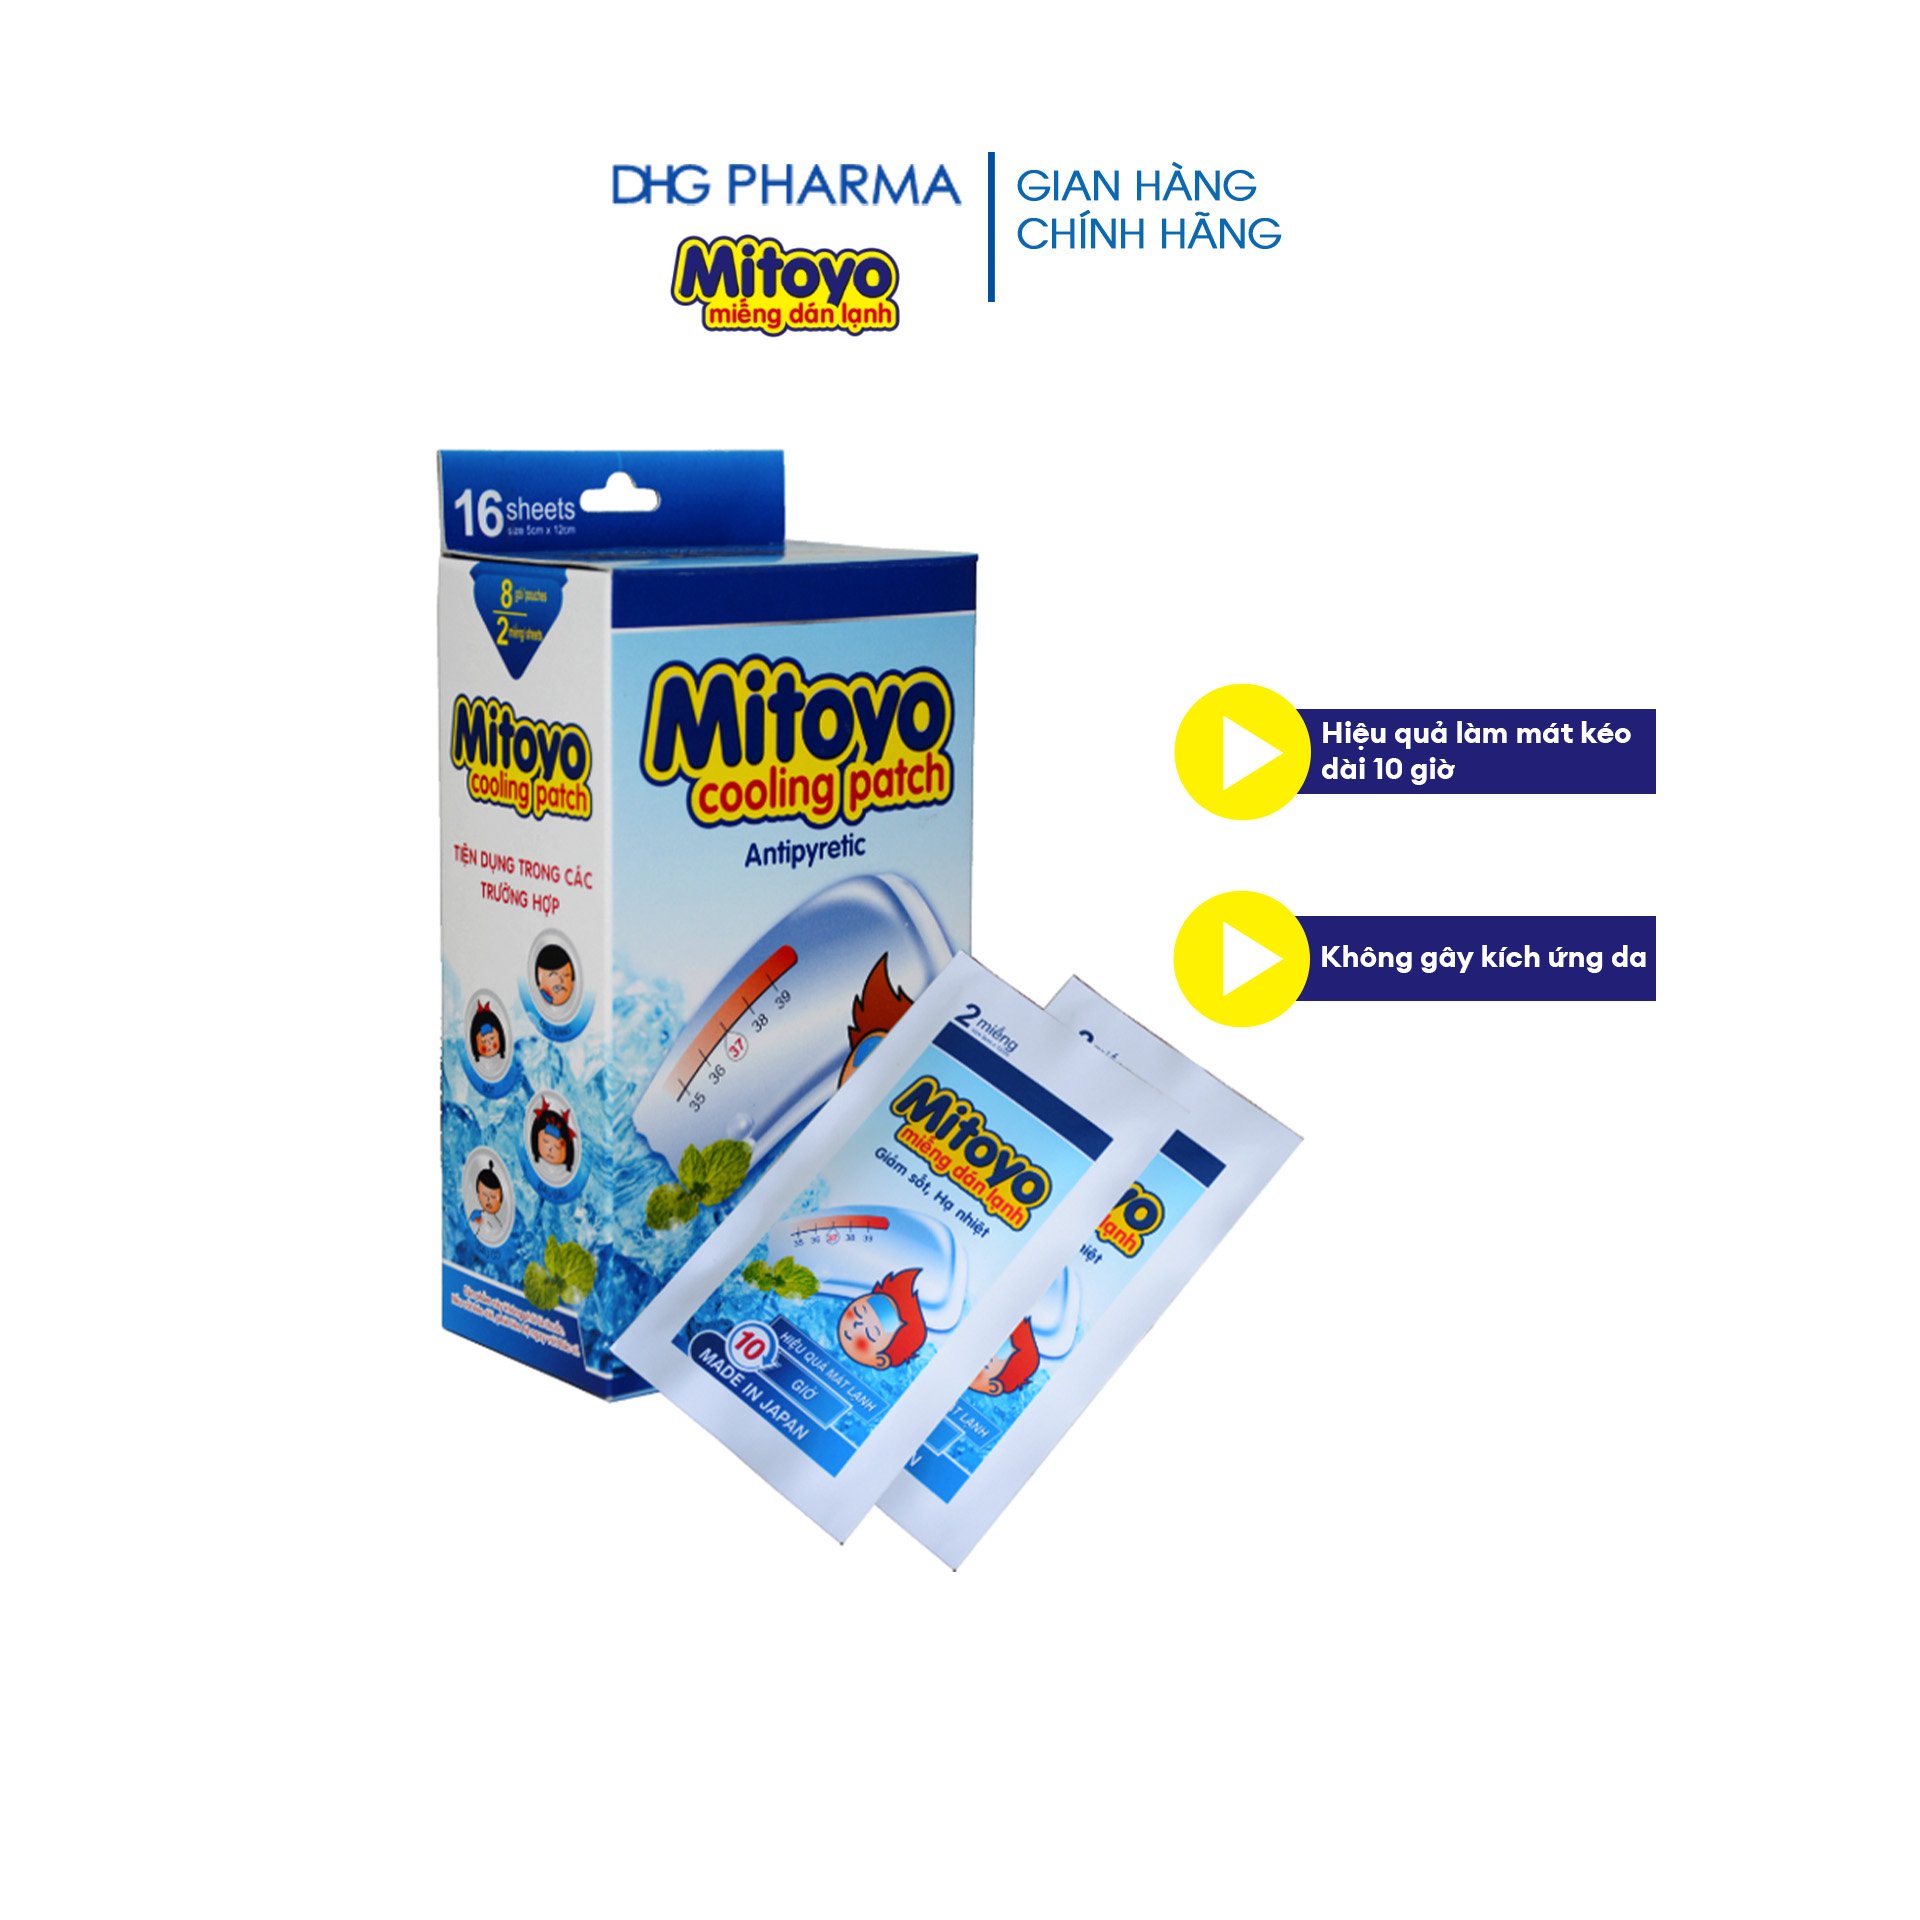 Miếng dán lạnh Mitoyo kéo dài 10 giờ, dịu nhẹ trên da Hộp 8 miếng - Chính hãng DHG Pharma